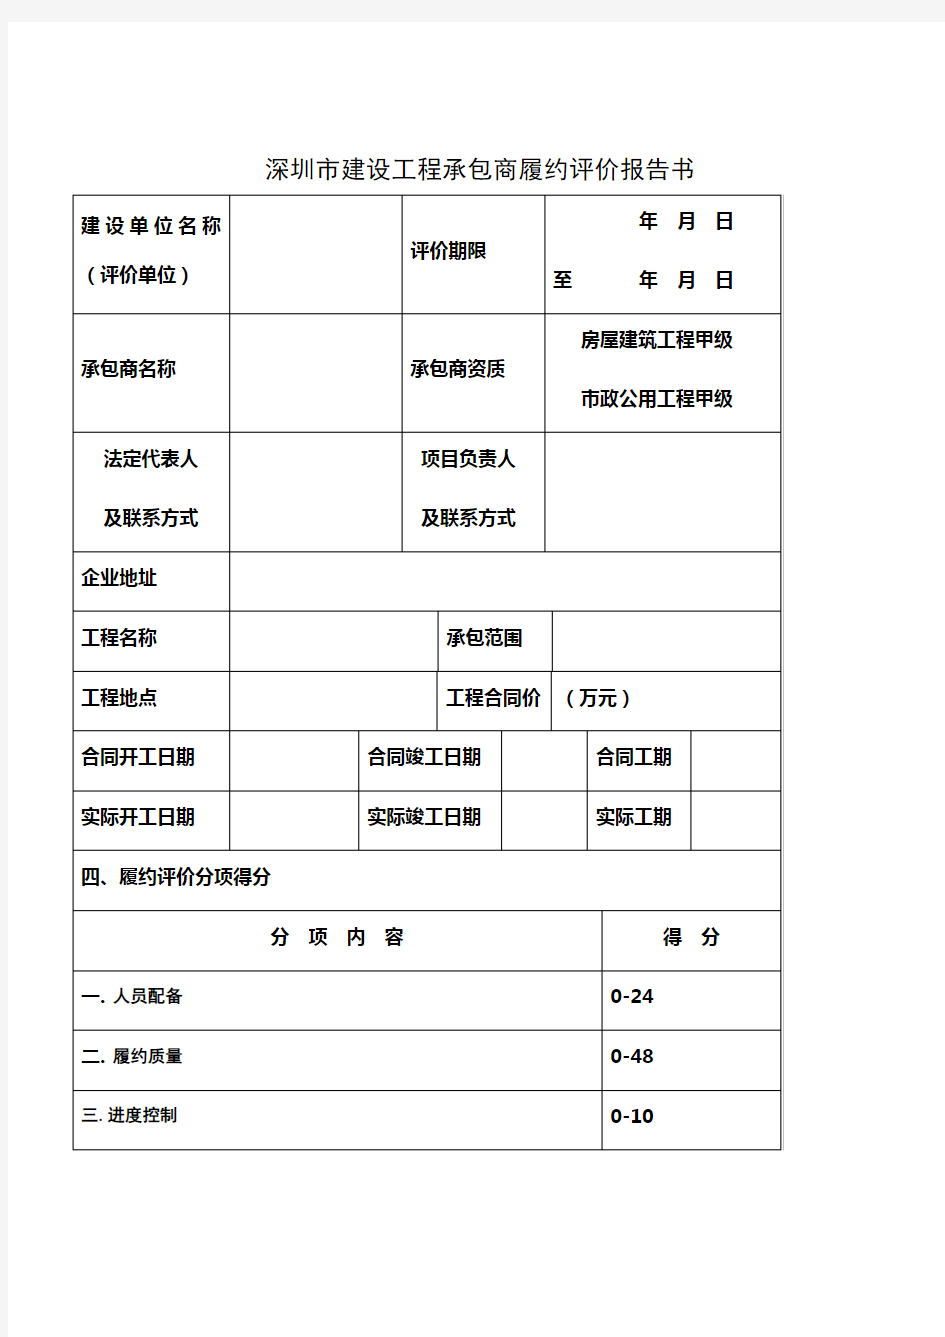 深圳市建设工程承包商履约评价报告书(评价表及评分细致)